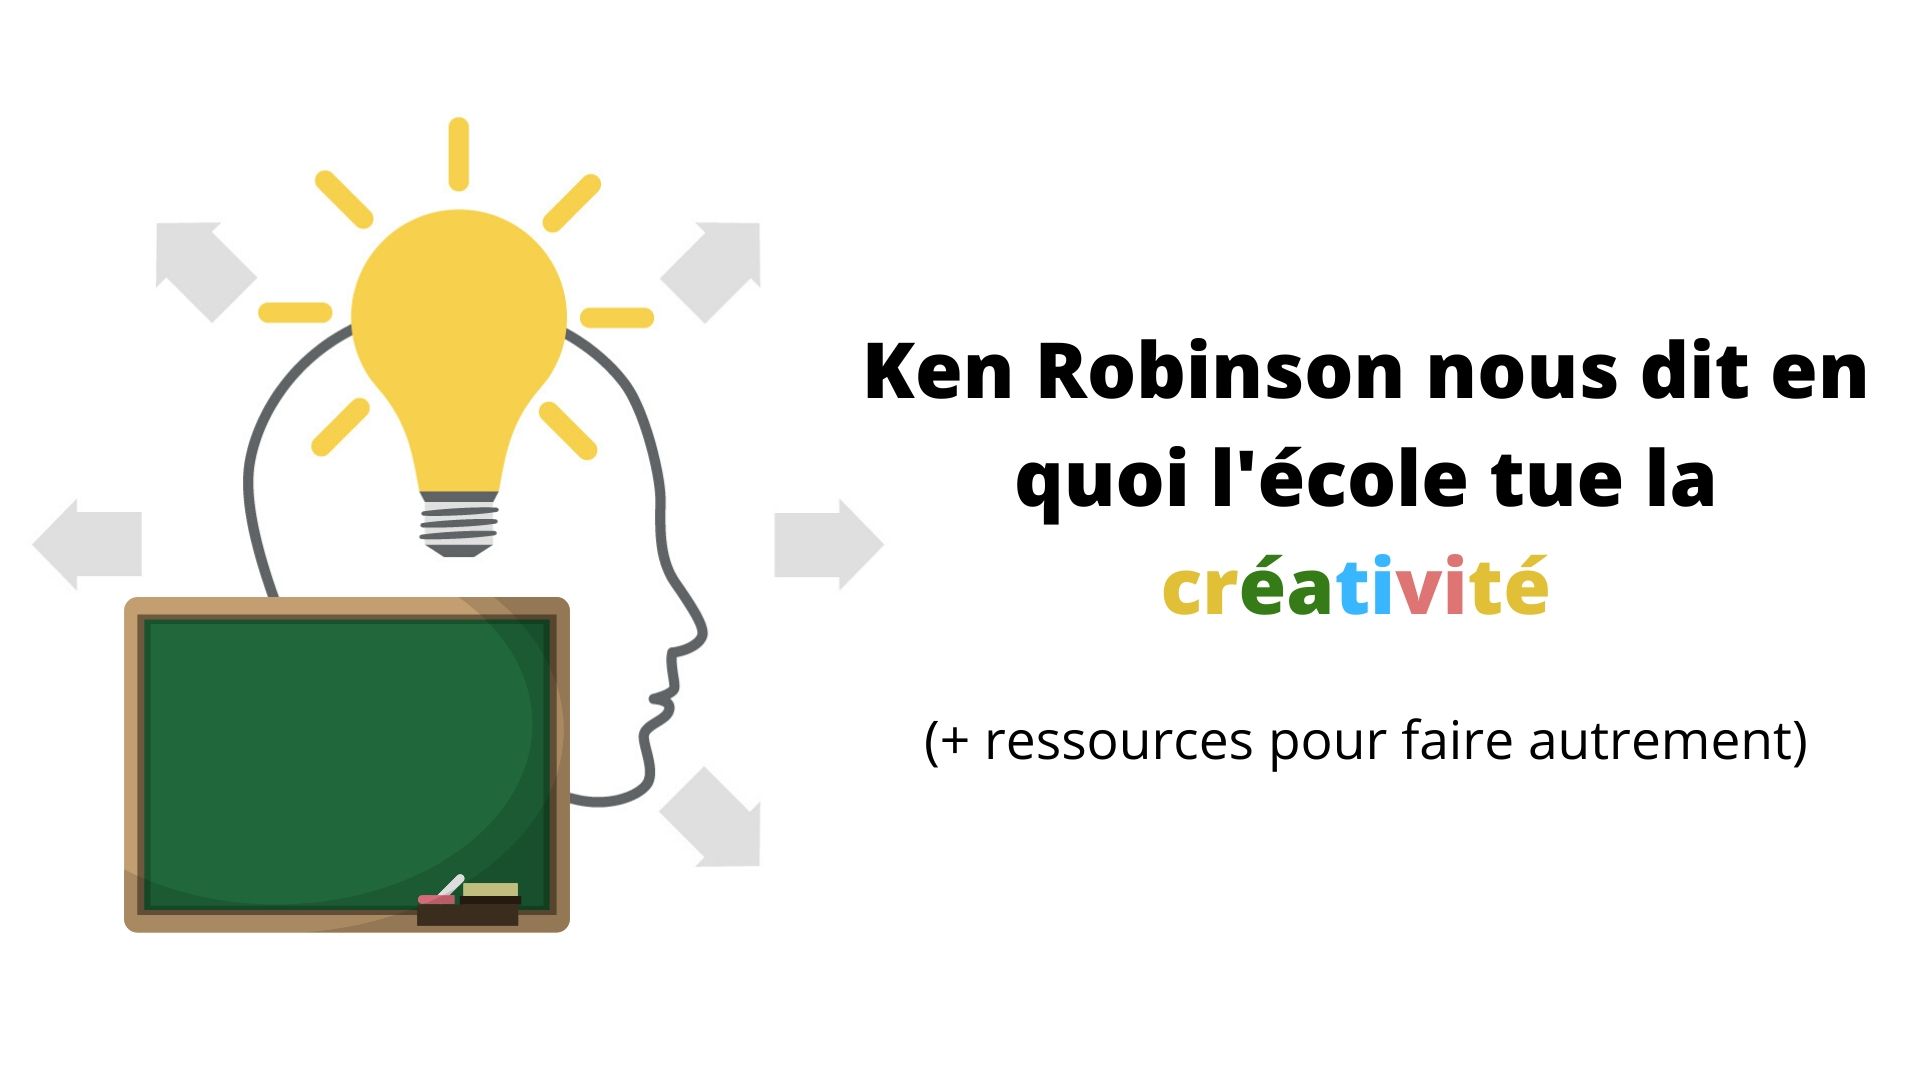 Ken Robinson nous dit en quoi l'école tue la créativité